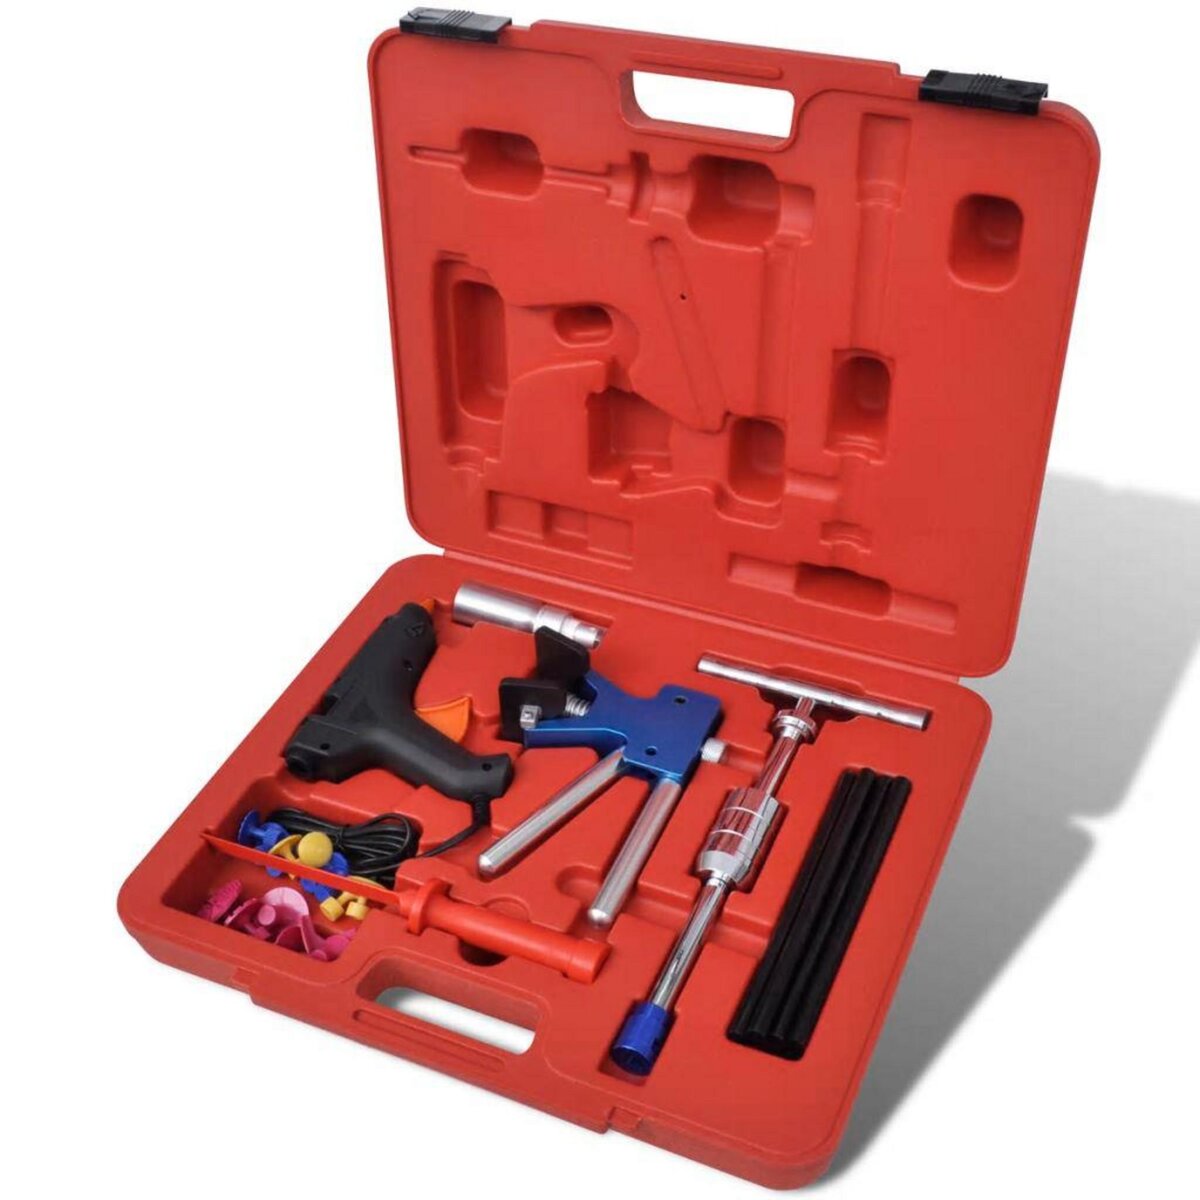 VIDAXL Kit d'outils de reparation de bosse de carrosserie 32 pcs pas cher 